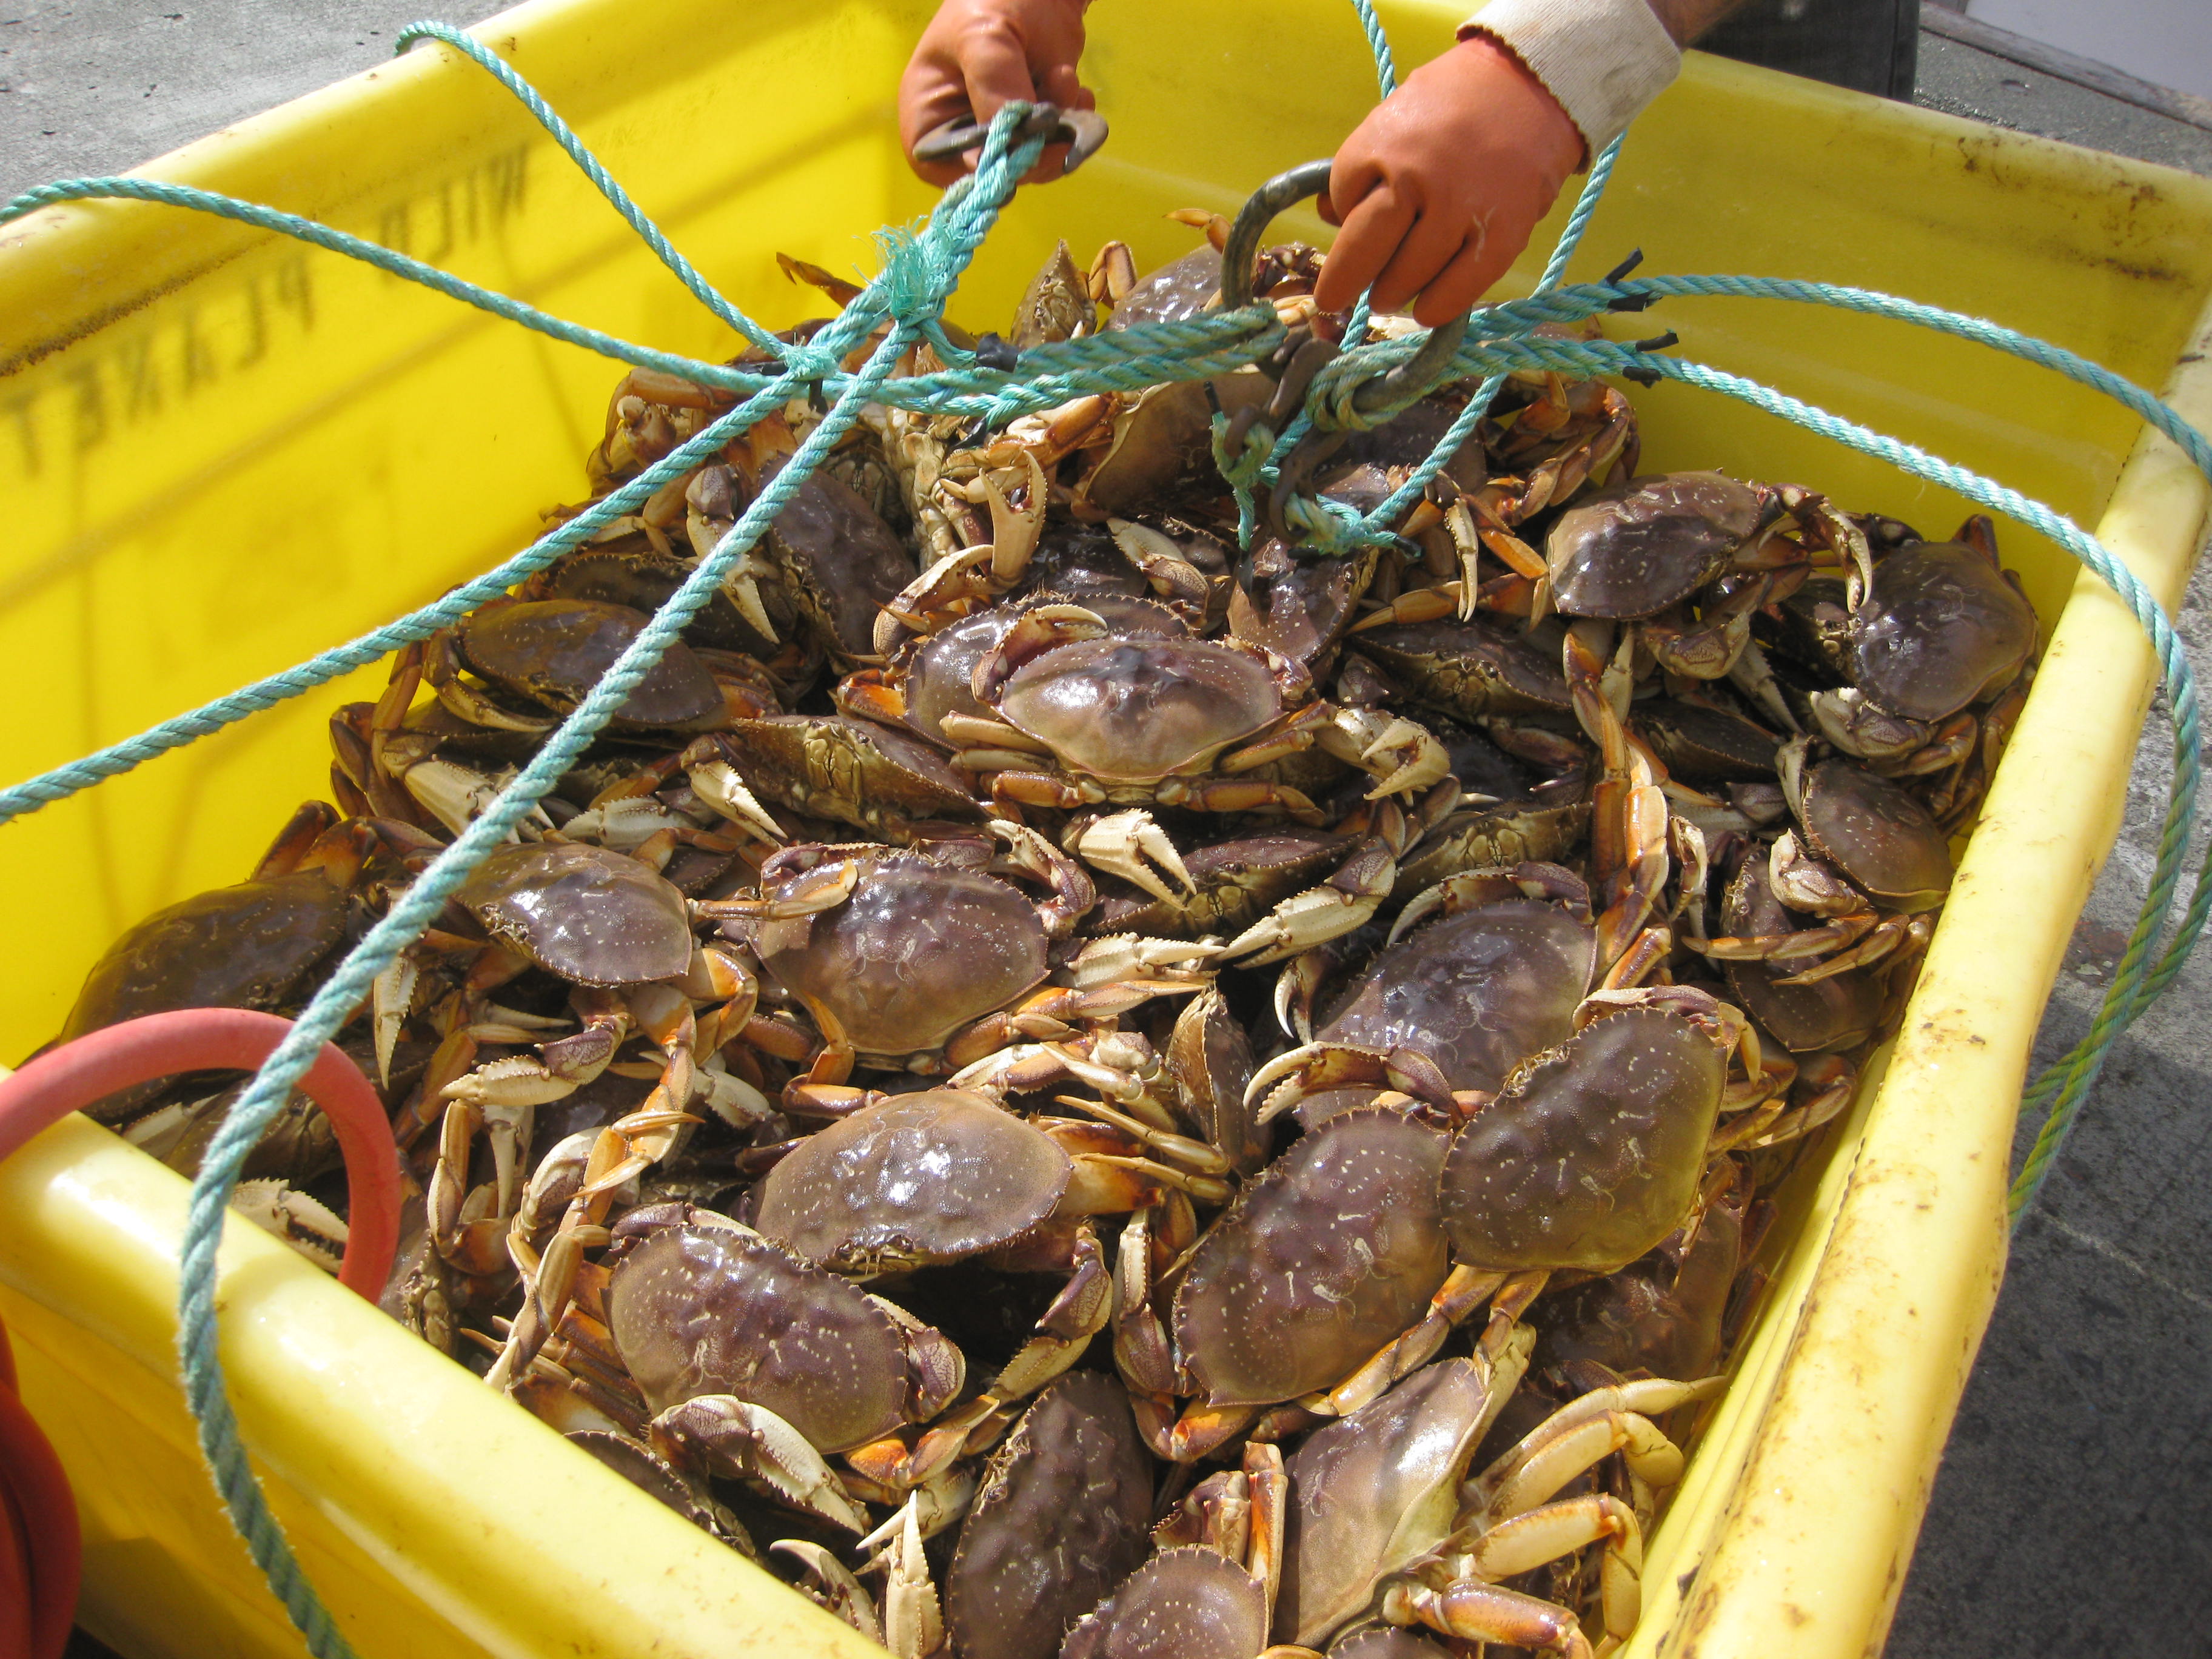 crabs-in-bin-commercial-catch2